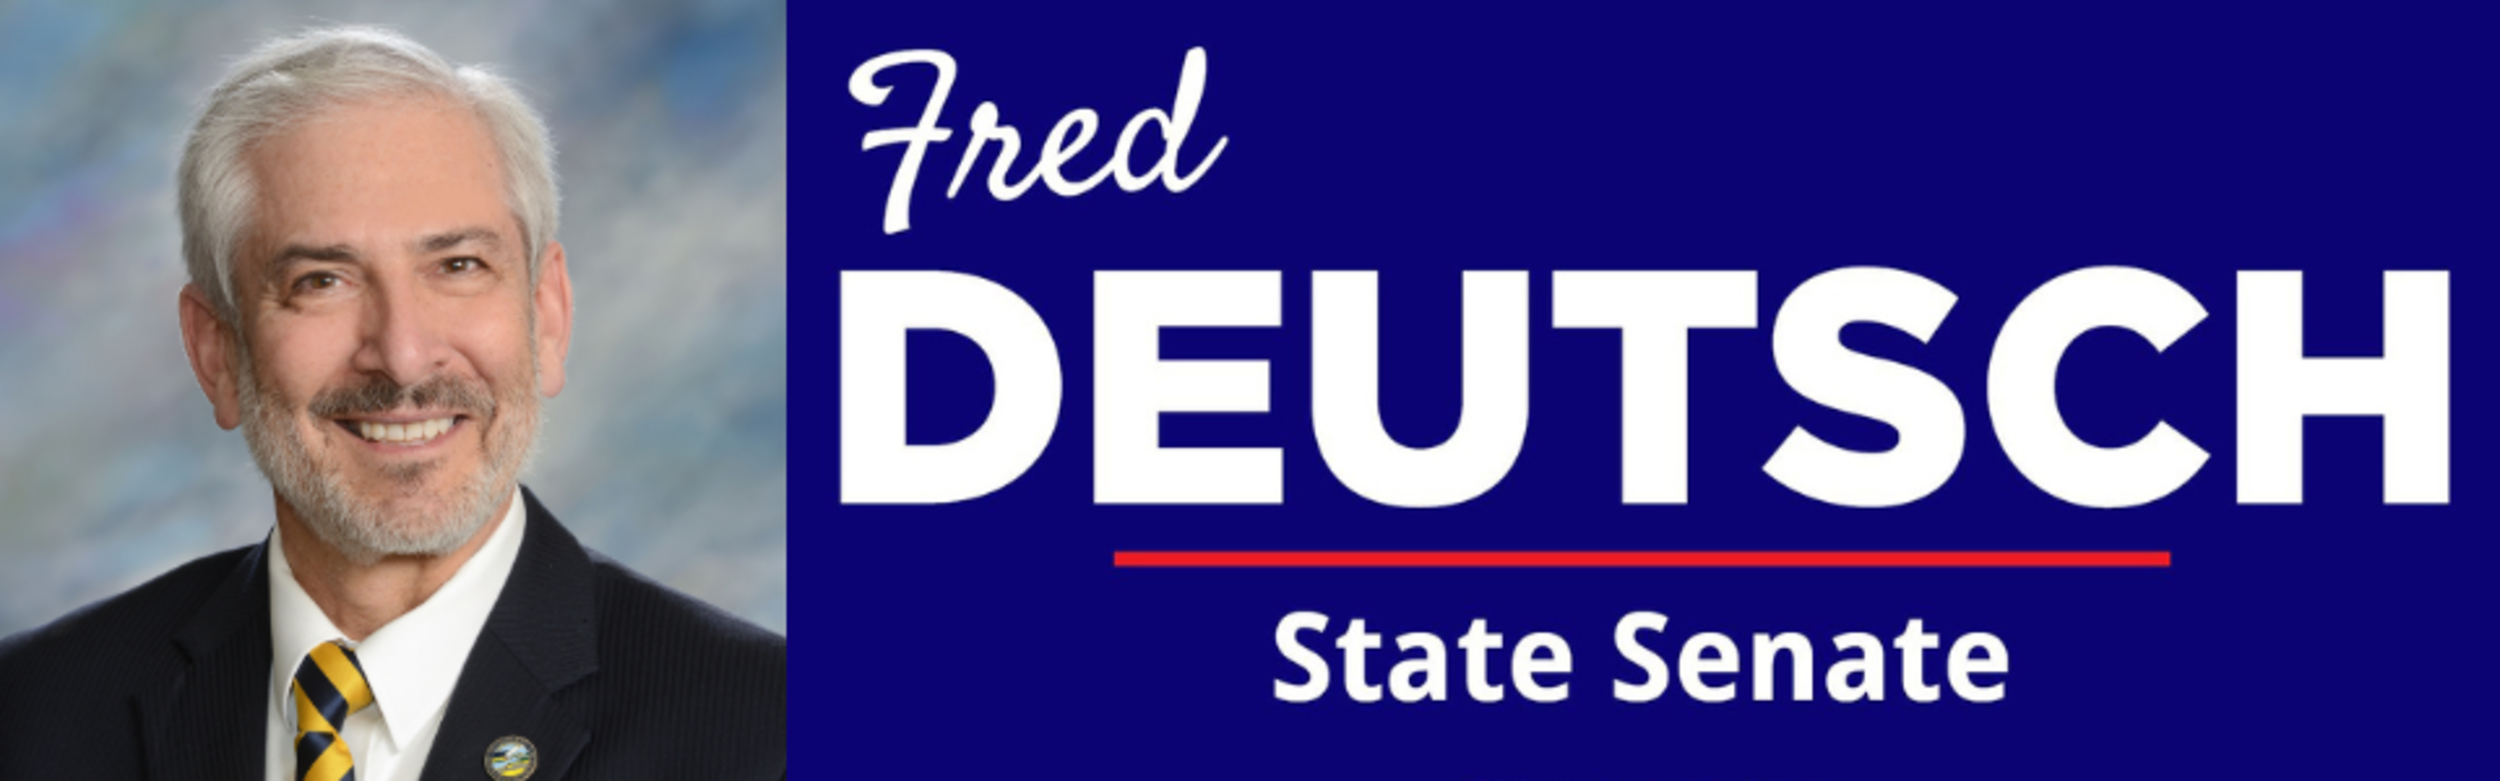 Fred Deutsch District 4 State Senate